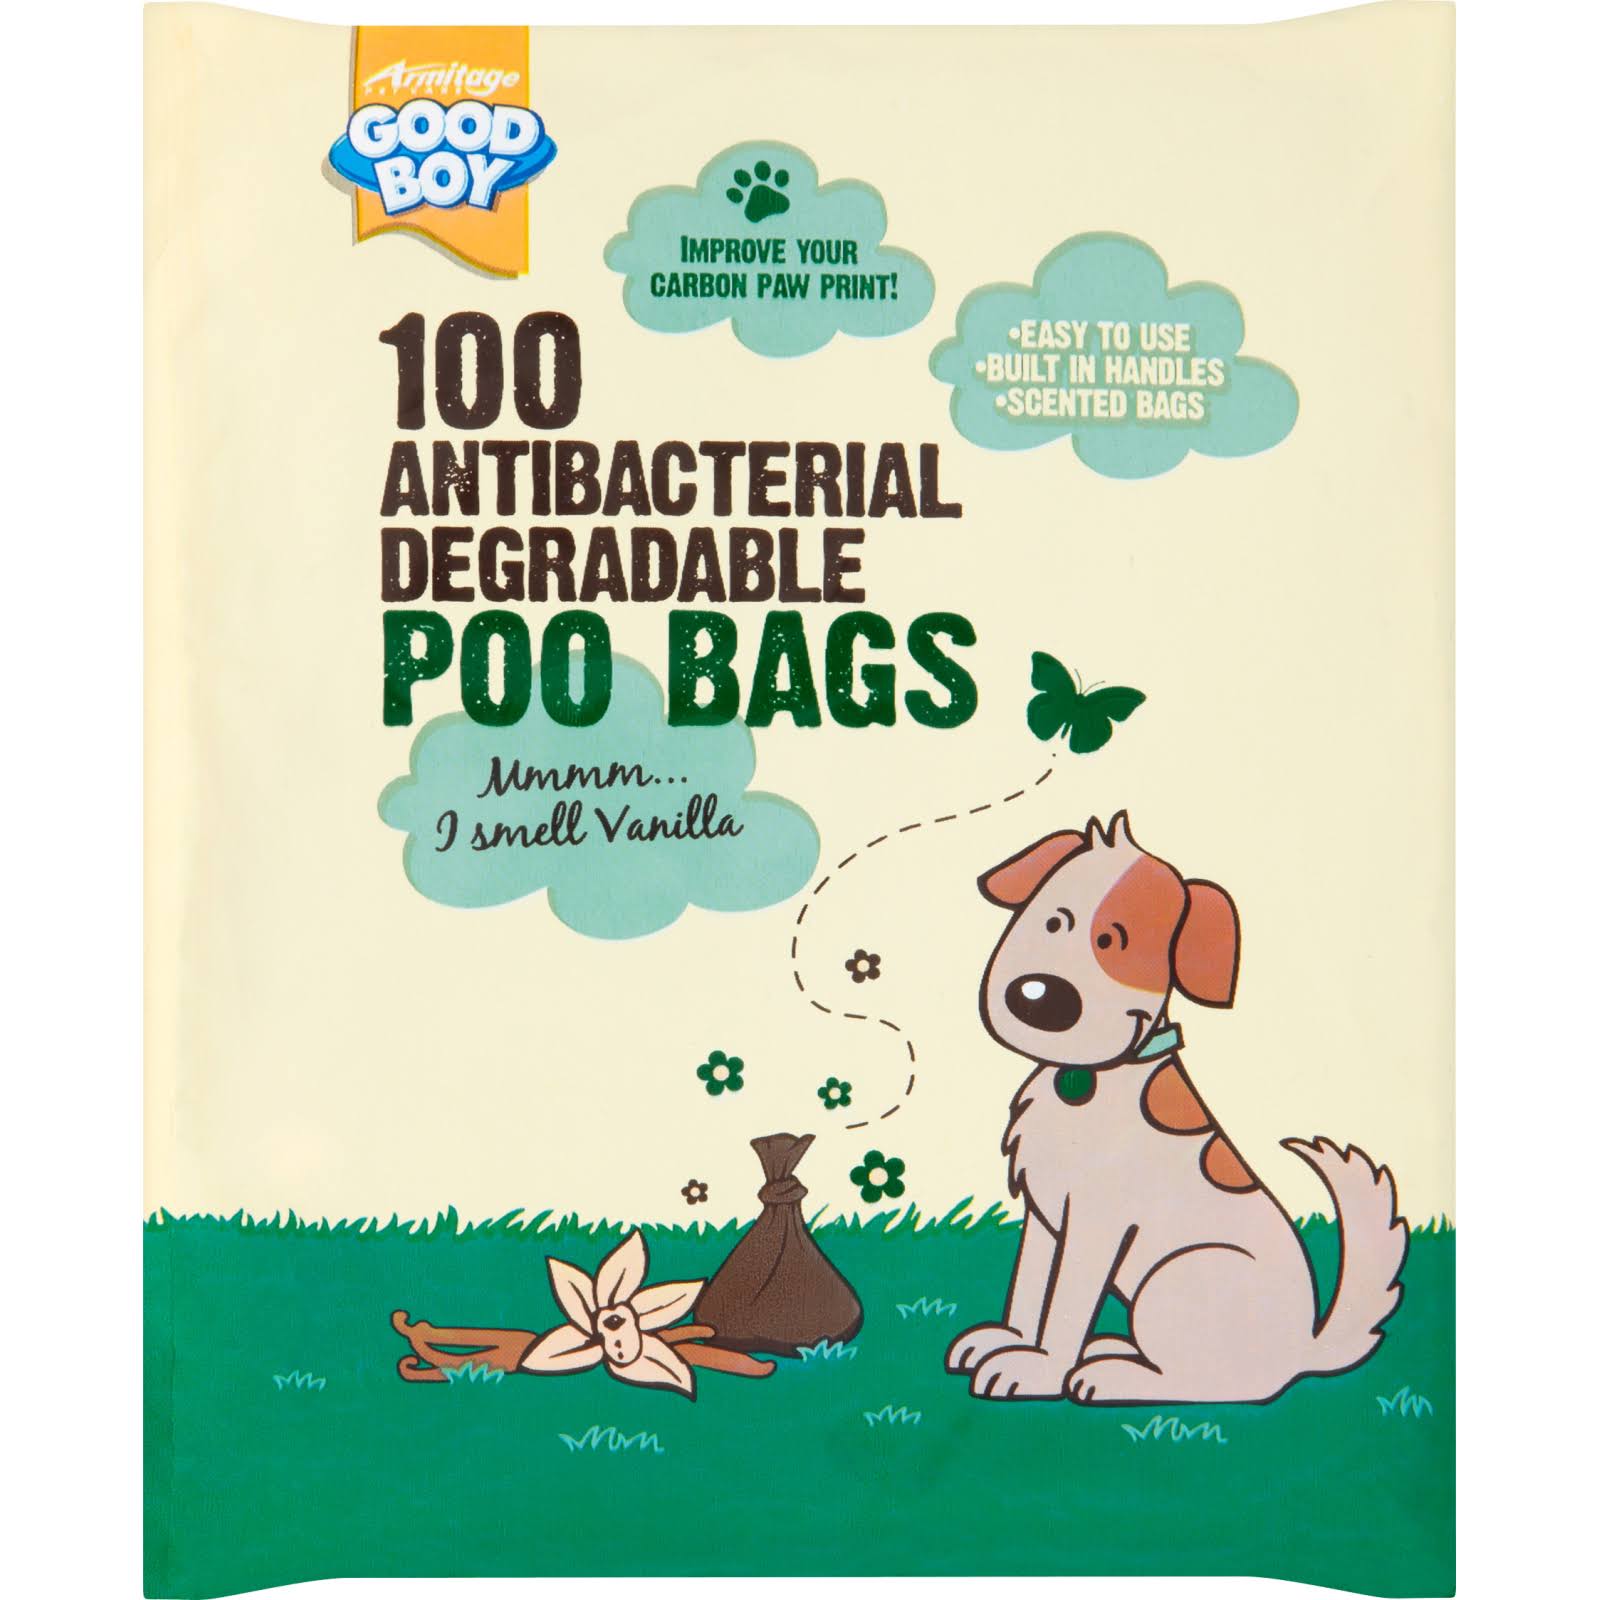 Good Boy Antibacterial Degradable Dog Poo Bags - 100pk